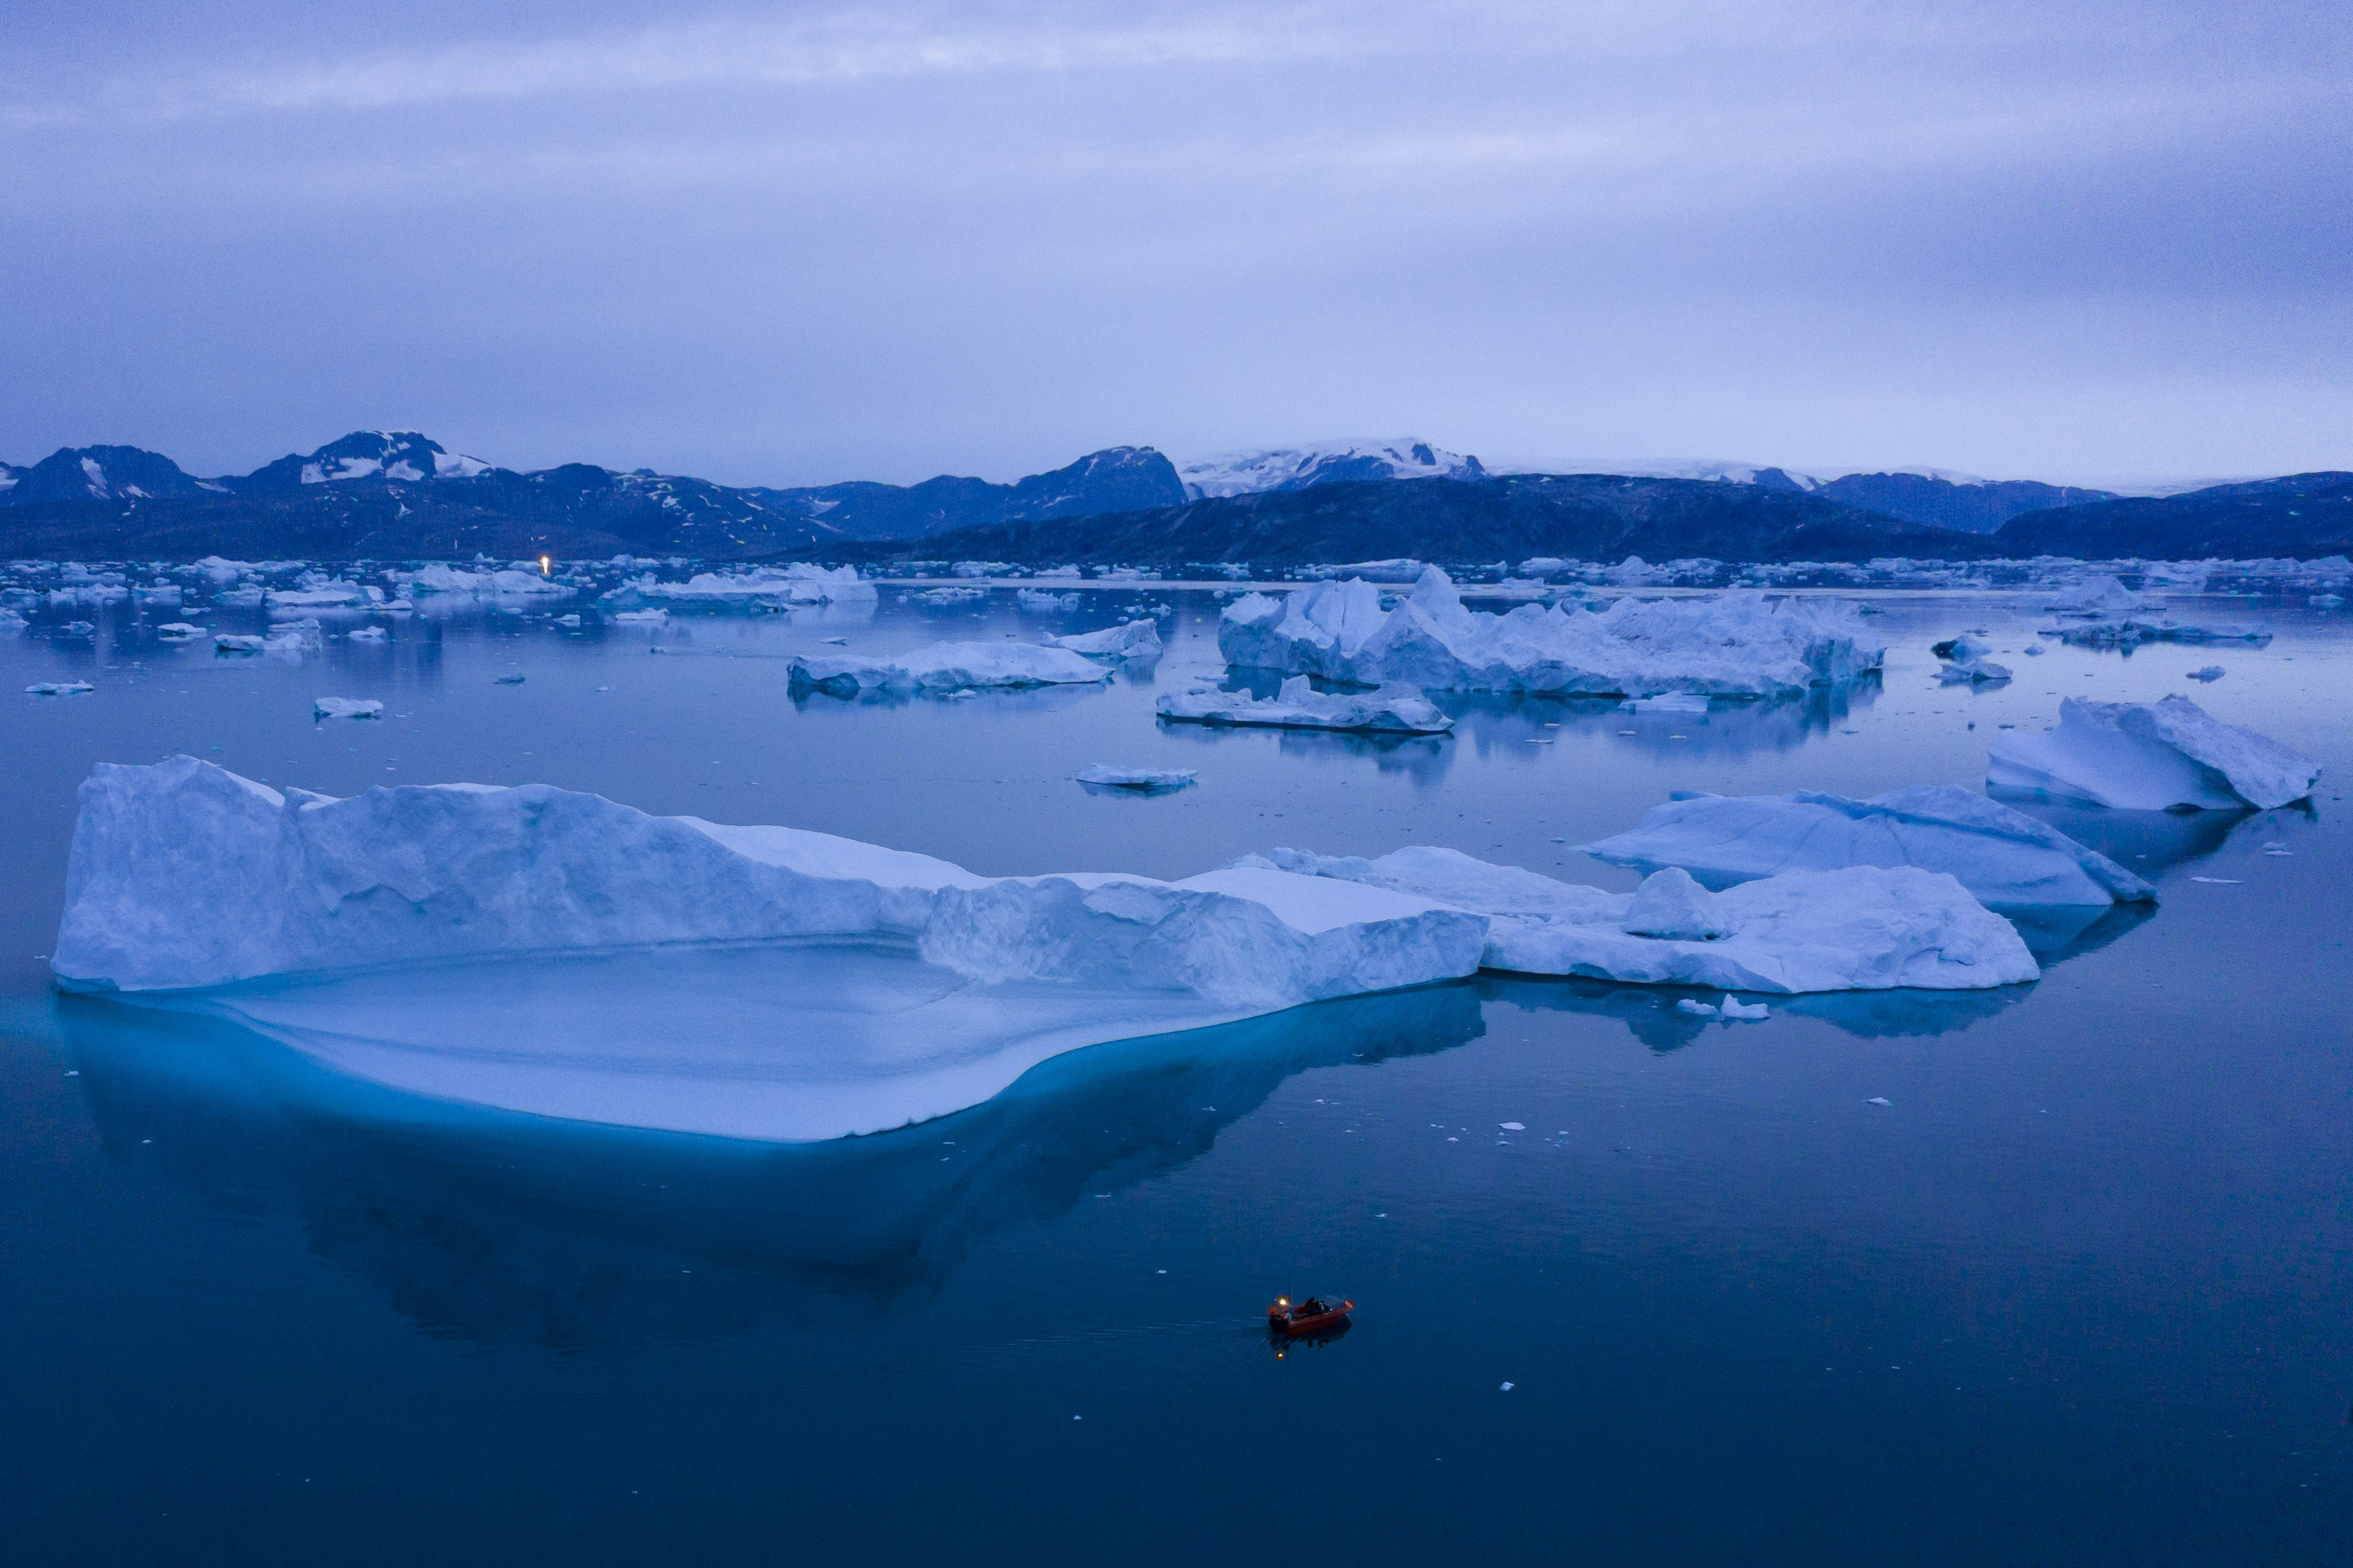 El derretimiento de los hielos polares, las prolongadas sequías y los eventos extremos son señales del calentamiento global (AP Foto/Felipe Dana, archivo)